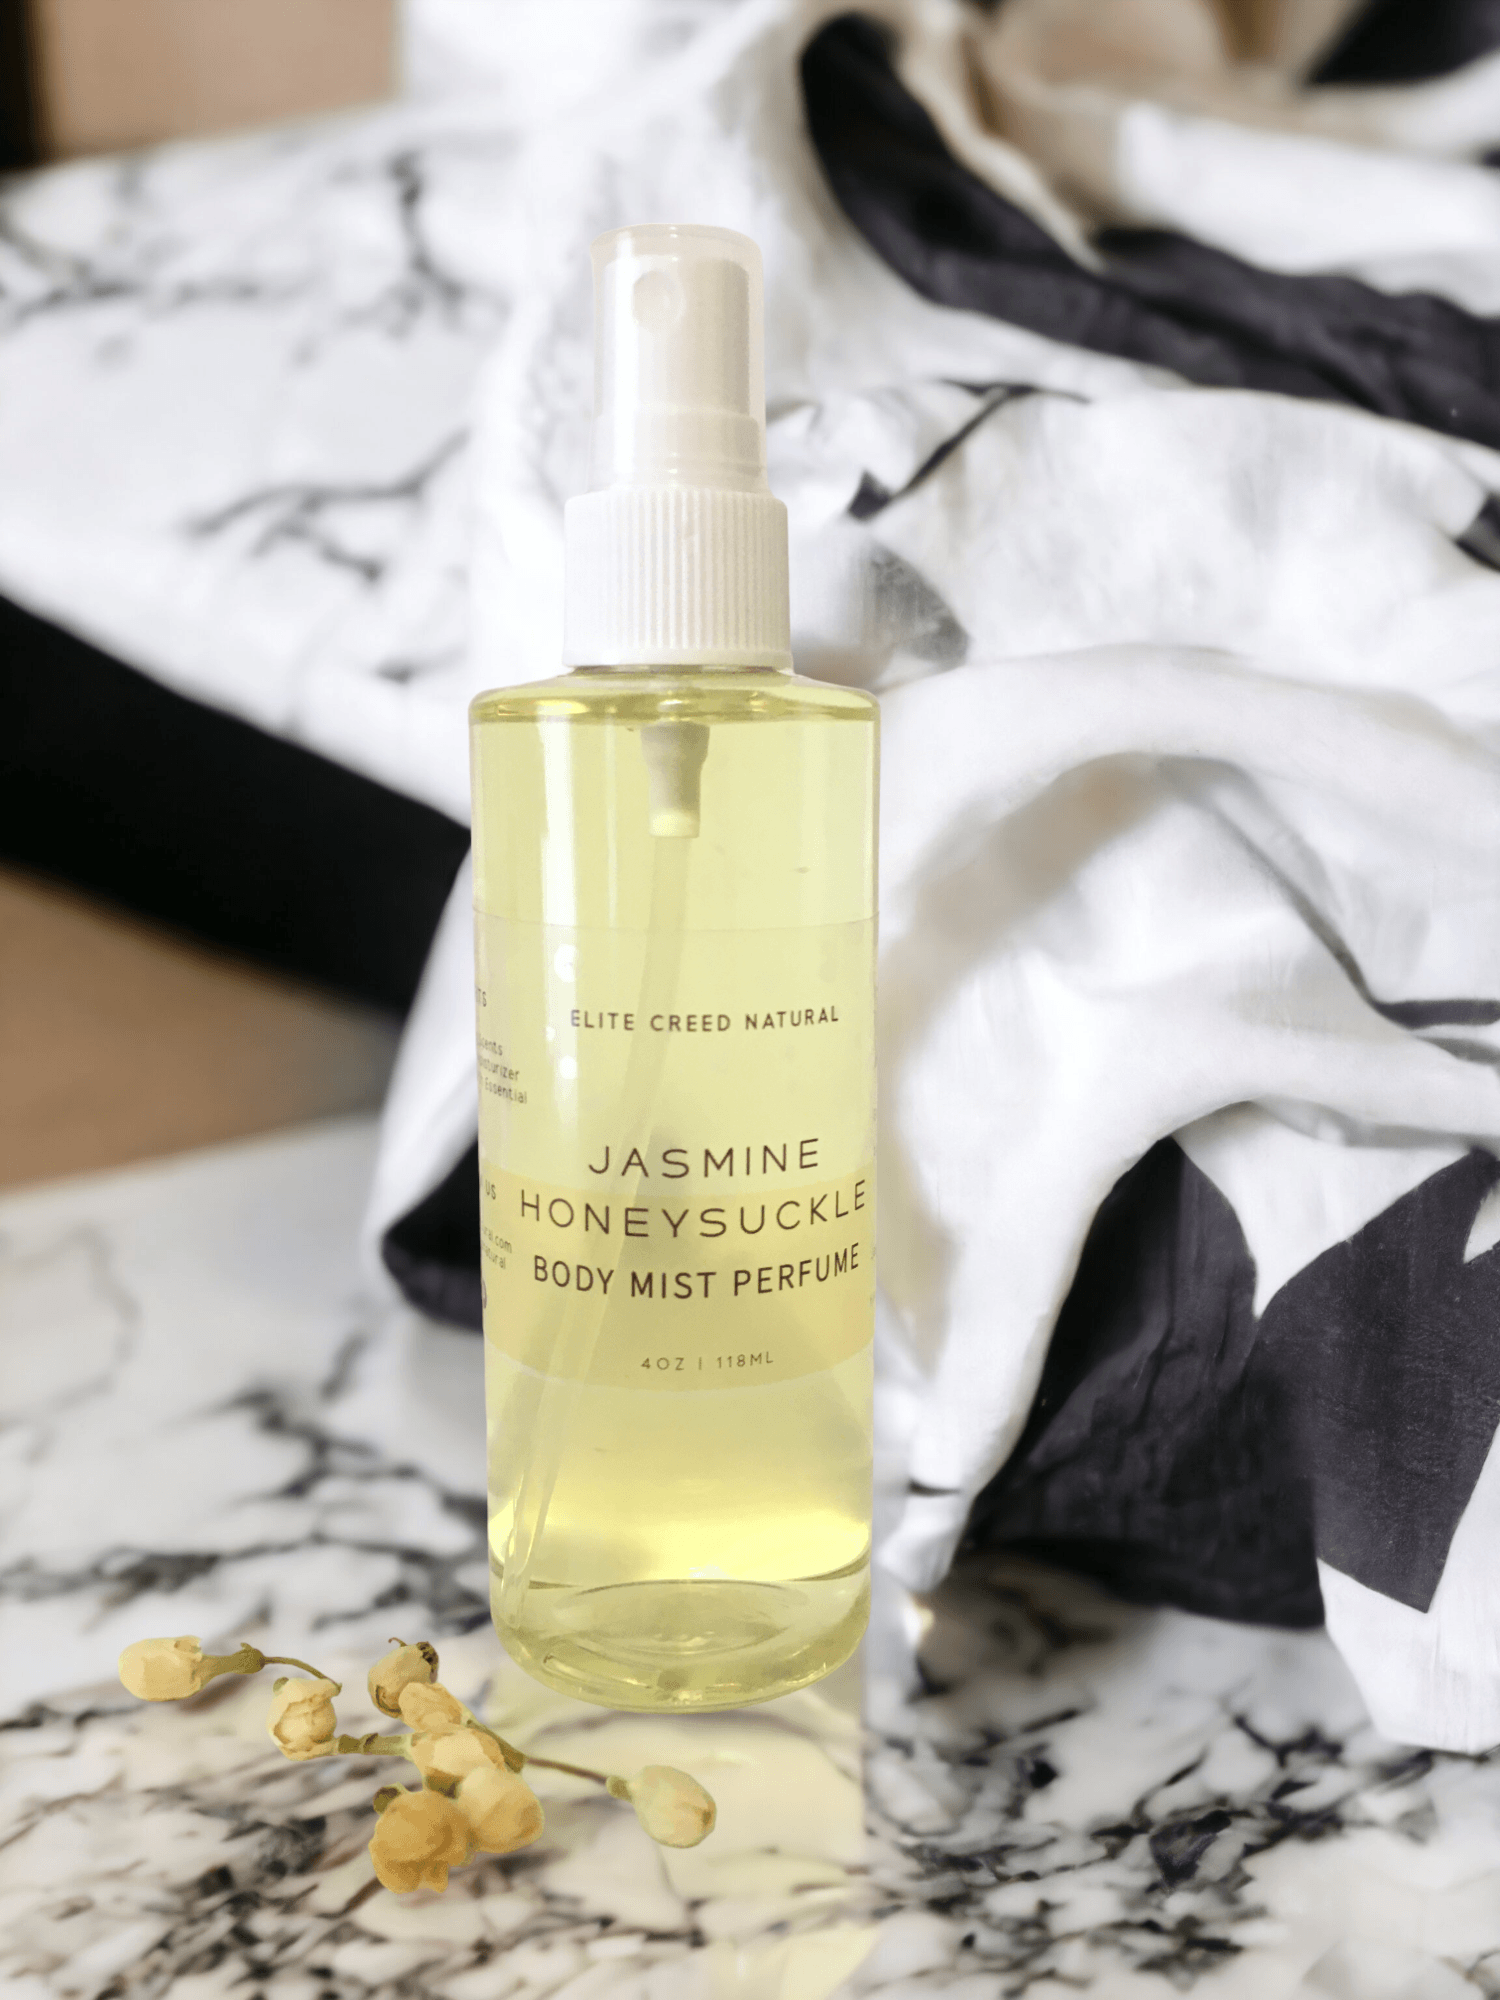 Jasmine Honeysuckle Body Mist Perfume - Elite Creed Natural